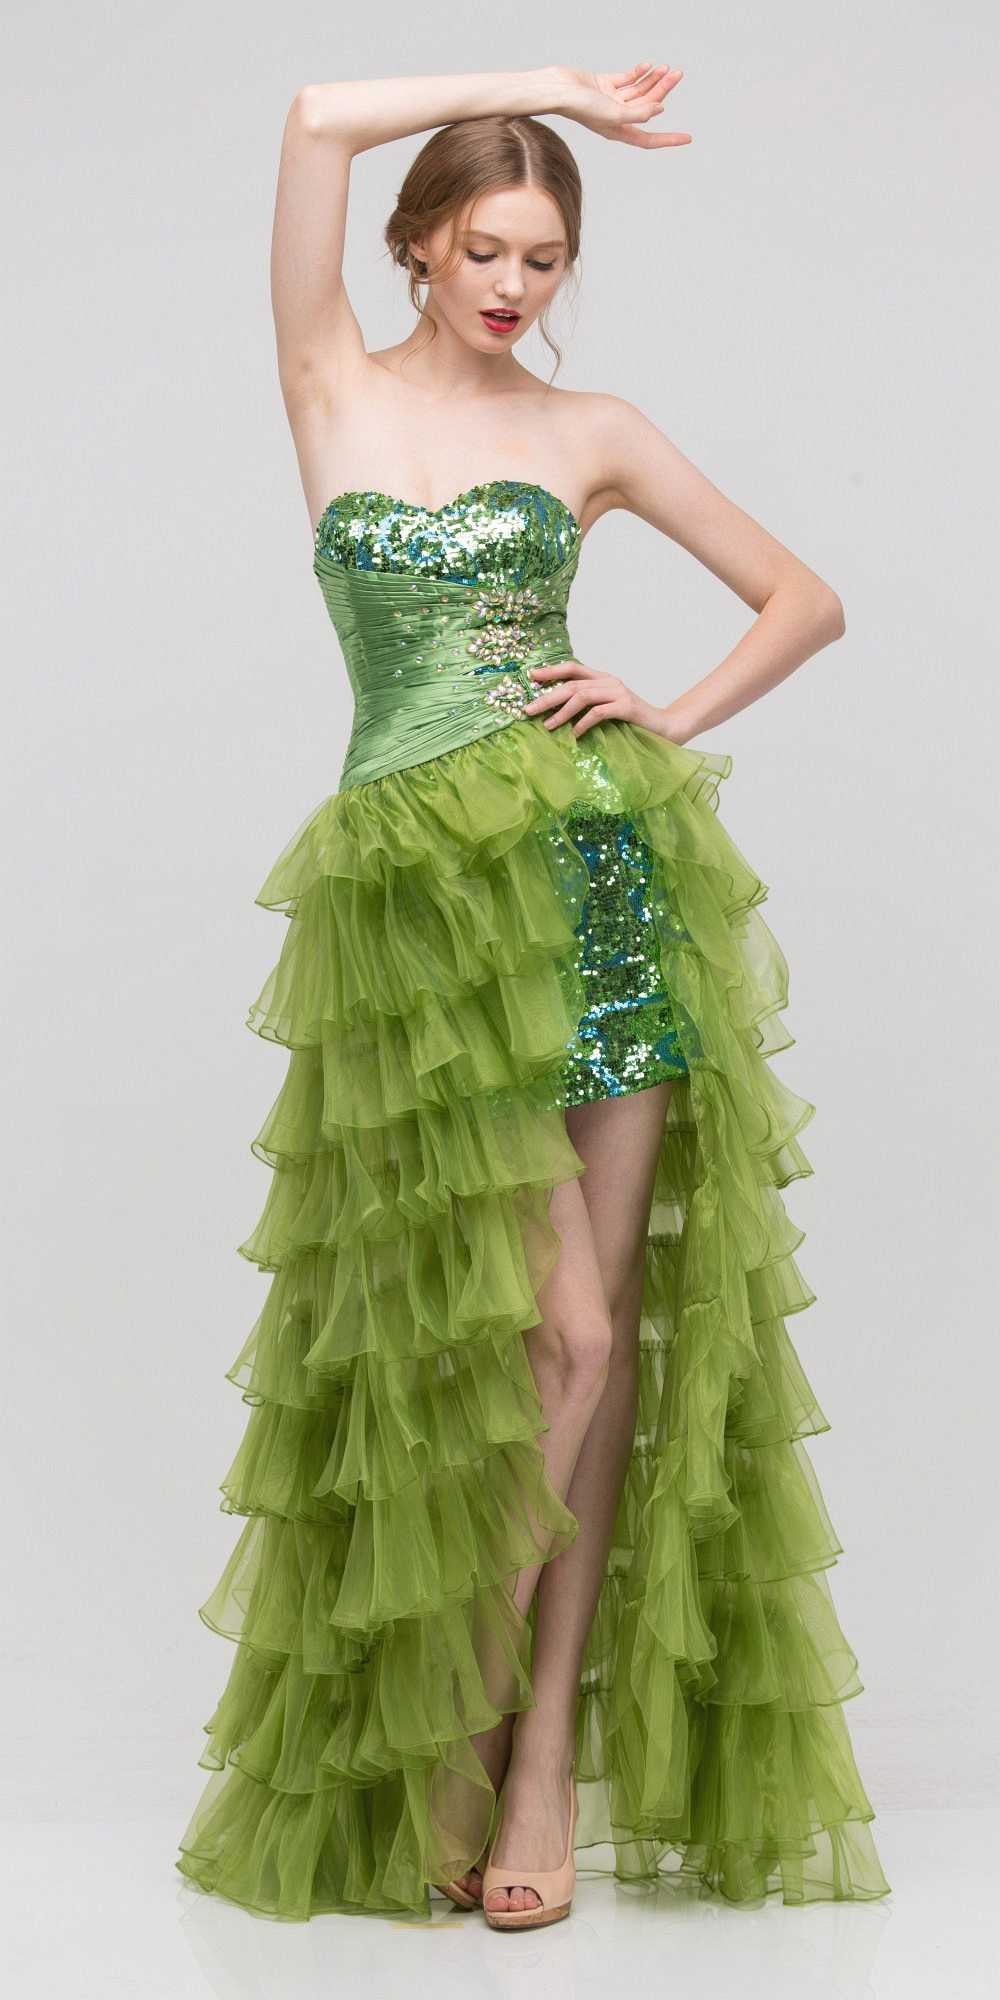 Long Ruffled Skirt Thigh Slit Strapless Green Prom Dress